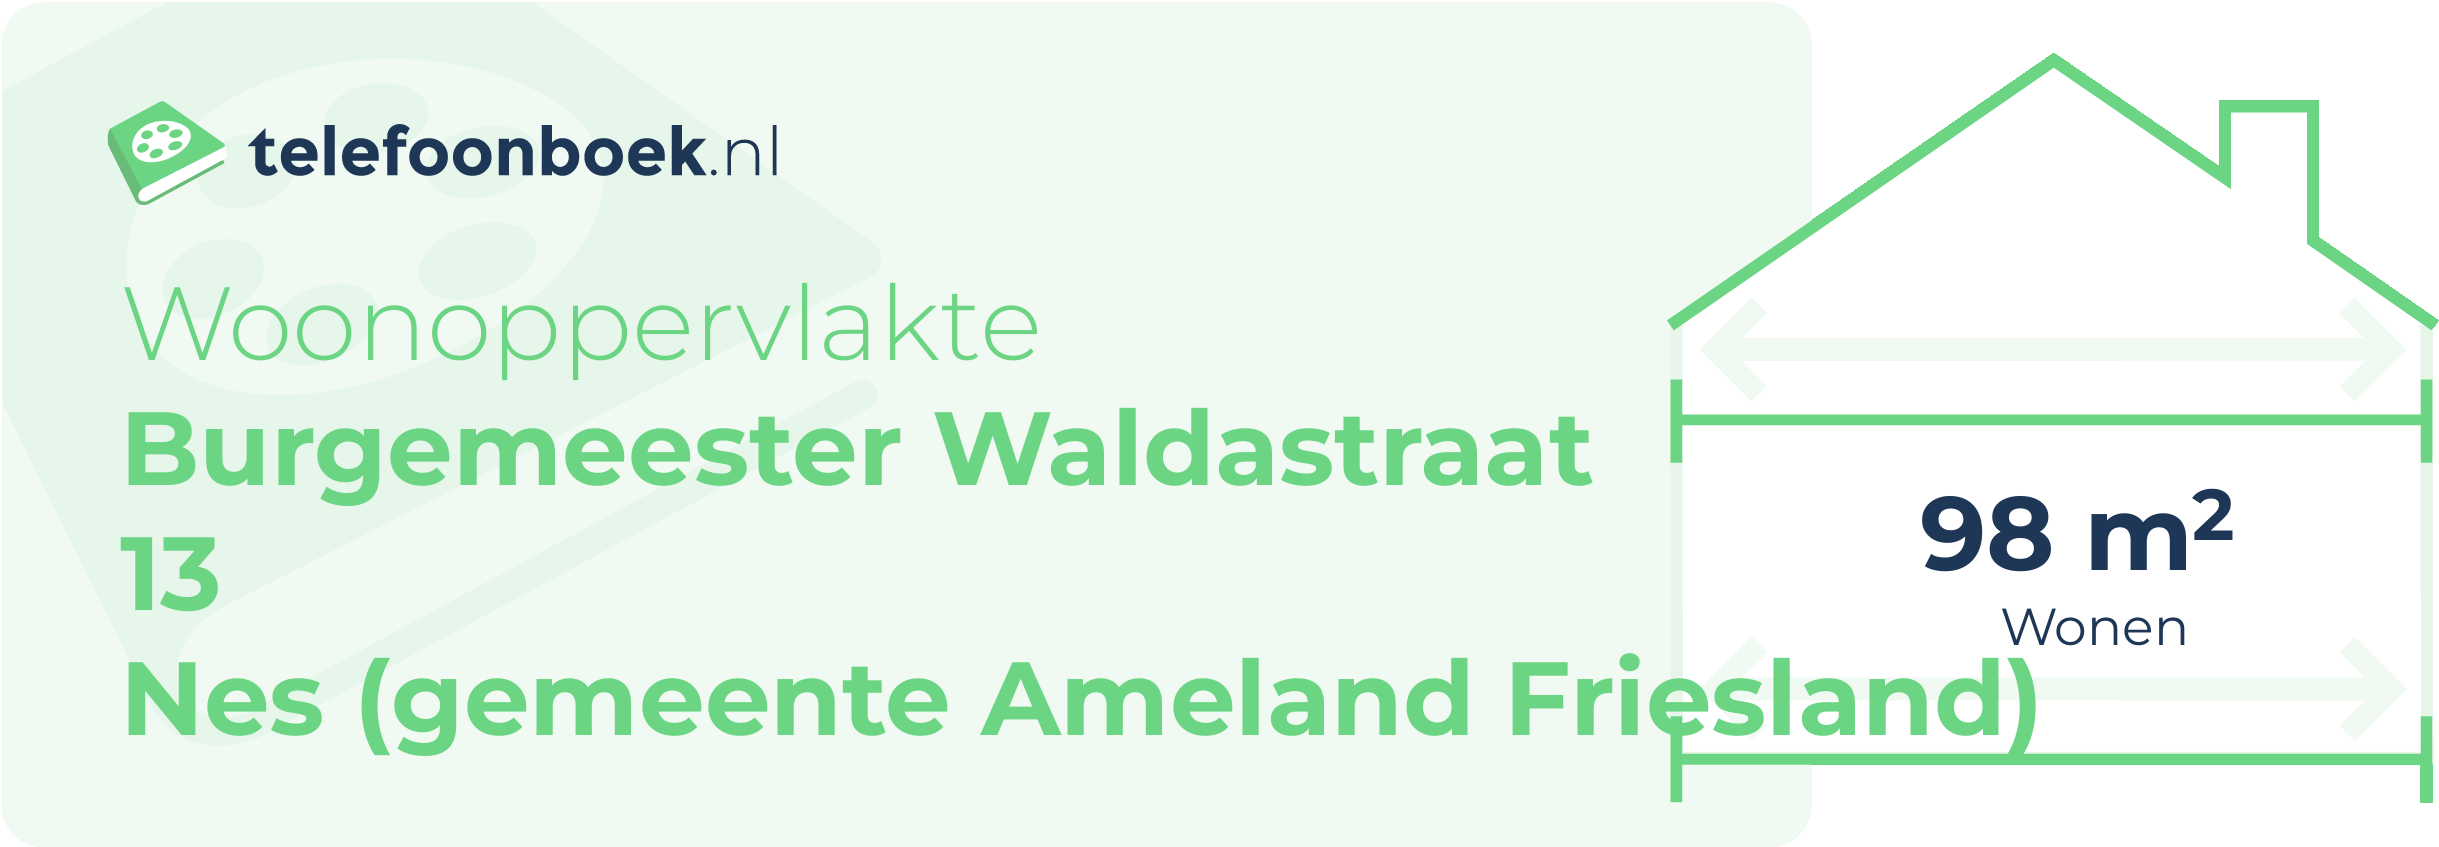 Woonoppervlakte Burgemeester Waldastraat 13 Nes (gemeente Ameland Friesland)